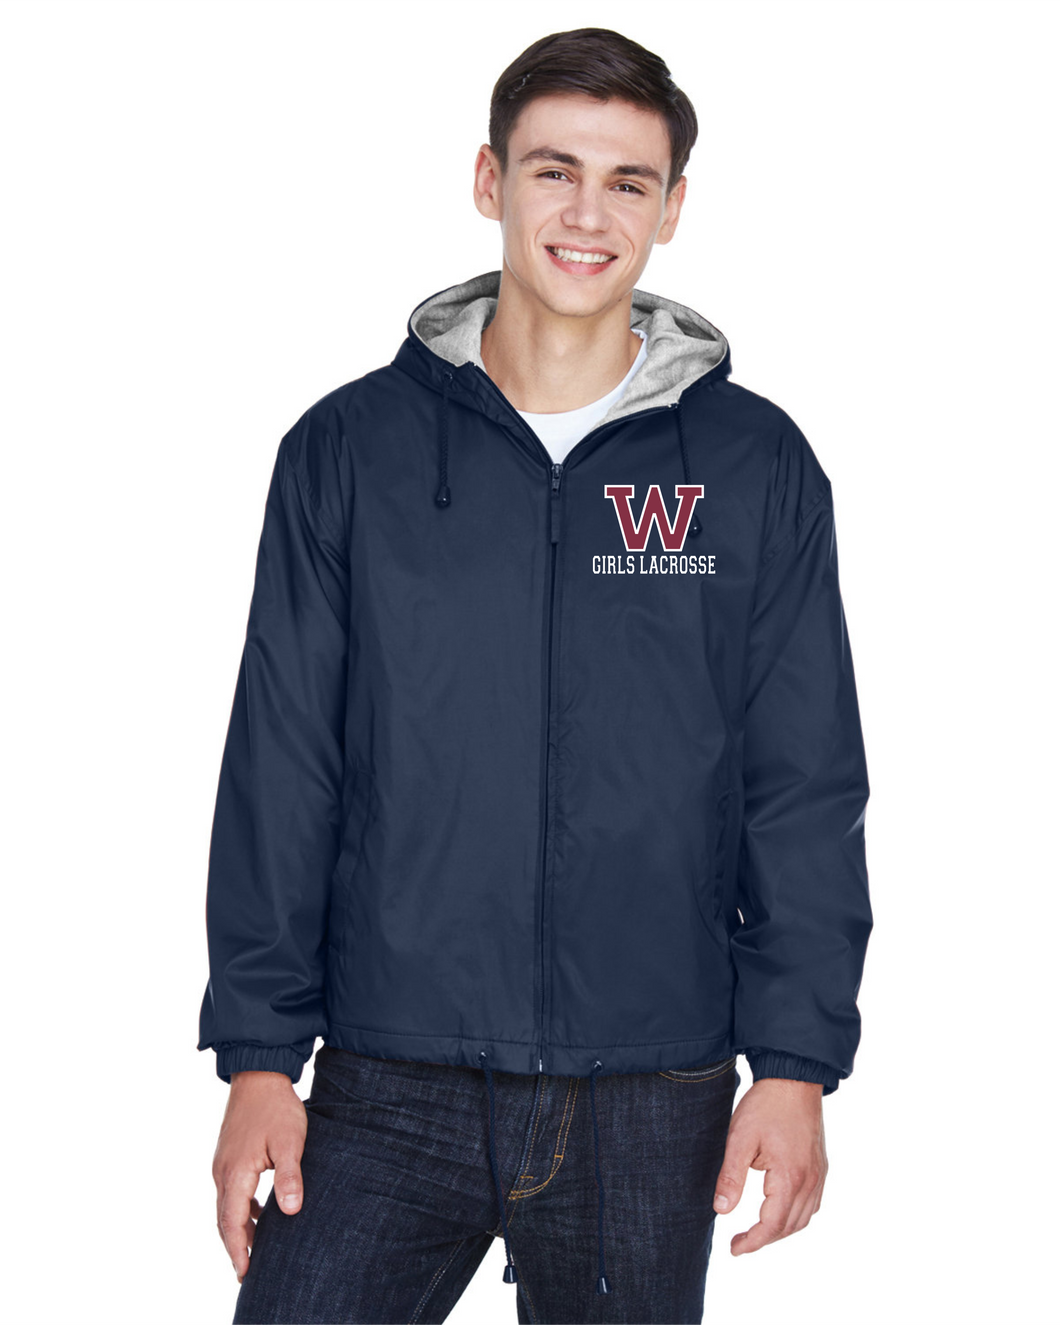 WW-GLAX-115-1 - UltraClub Adult Fleece-Lined Hooded Jacket - Woodstock Girls Lacrosse Logo